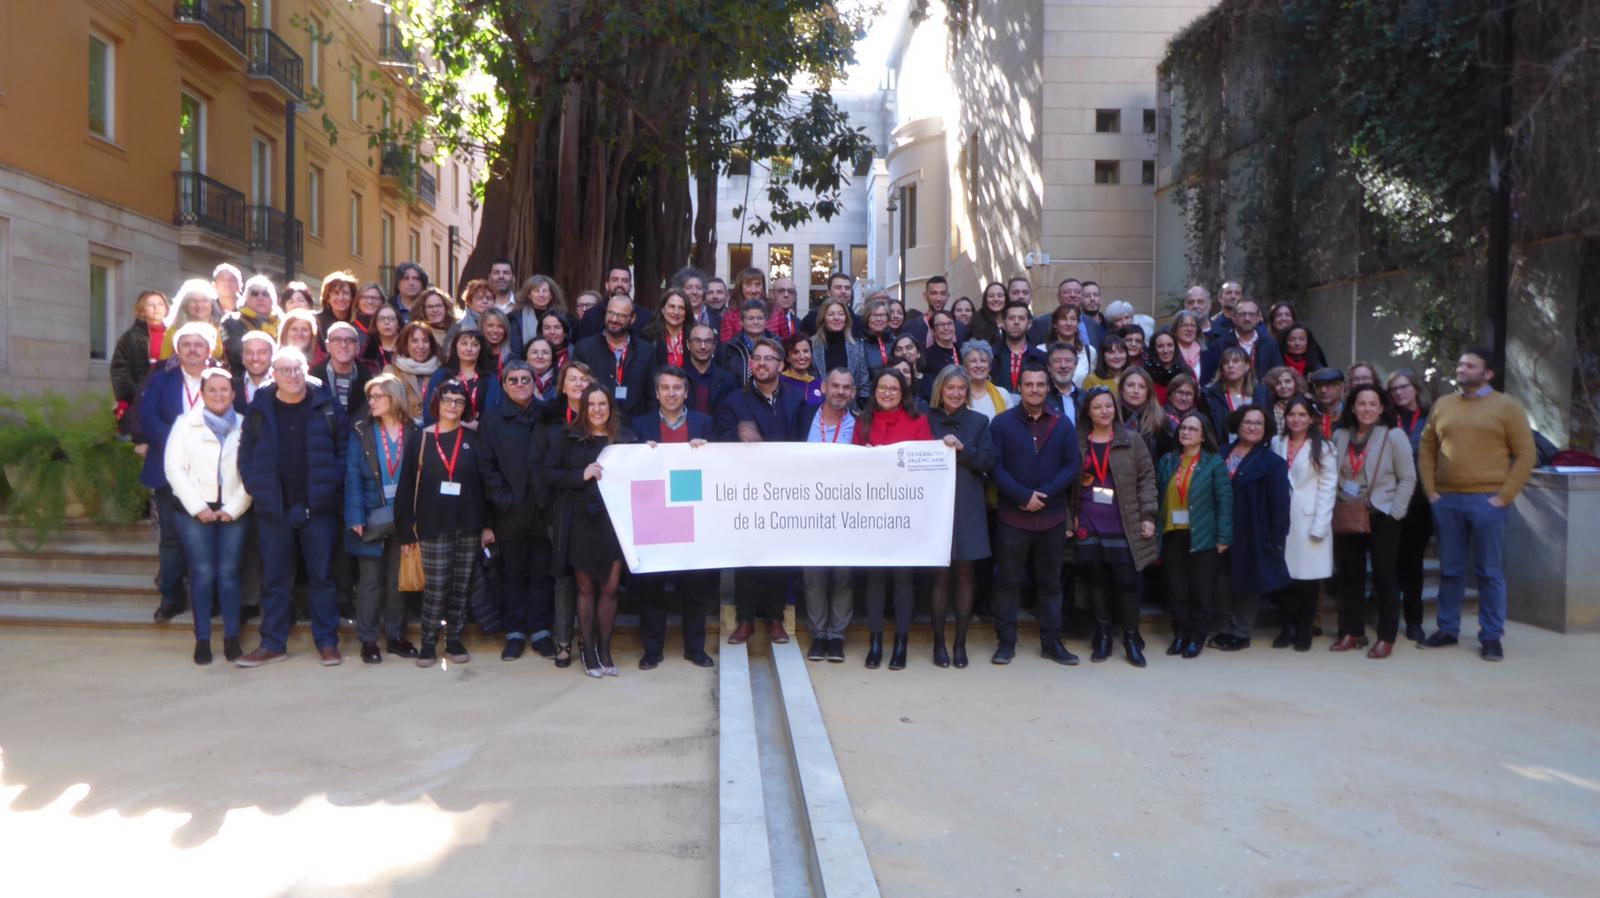 La Generalitat galardonada con los Premios Europeos de Servicios Sociales 2020 por el proceso participativo de la Ley de Servicios Sociales Inclusivos